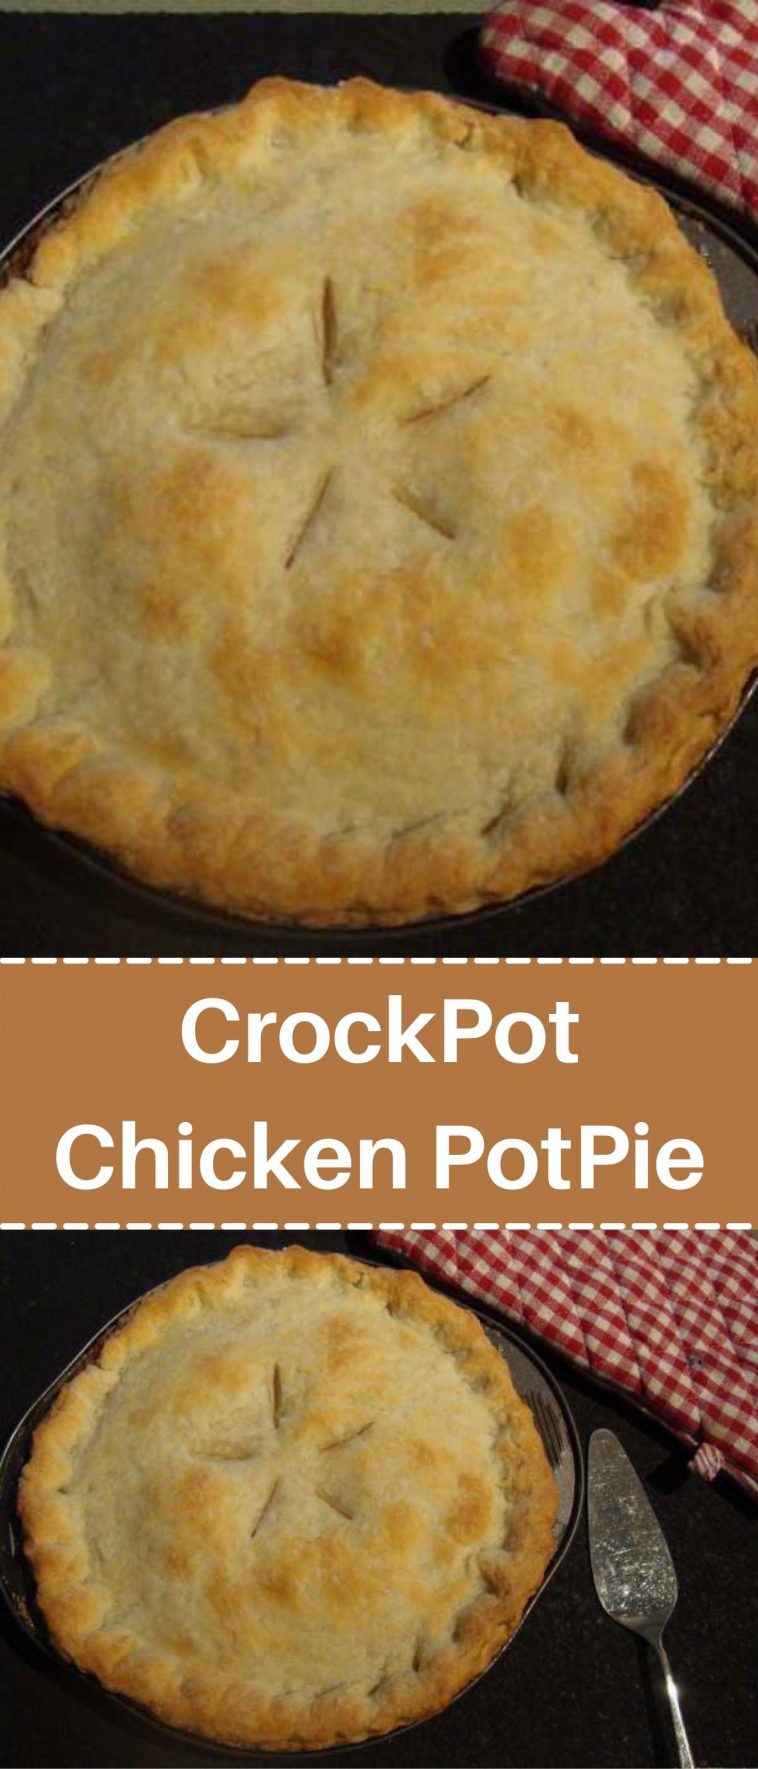 CrockPot Chicken PotPie